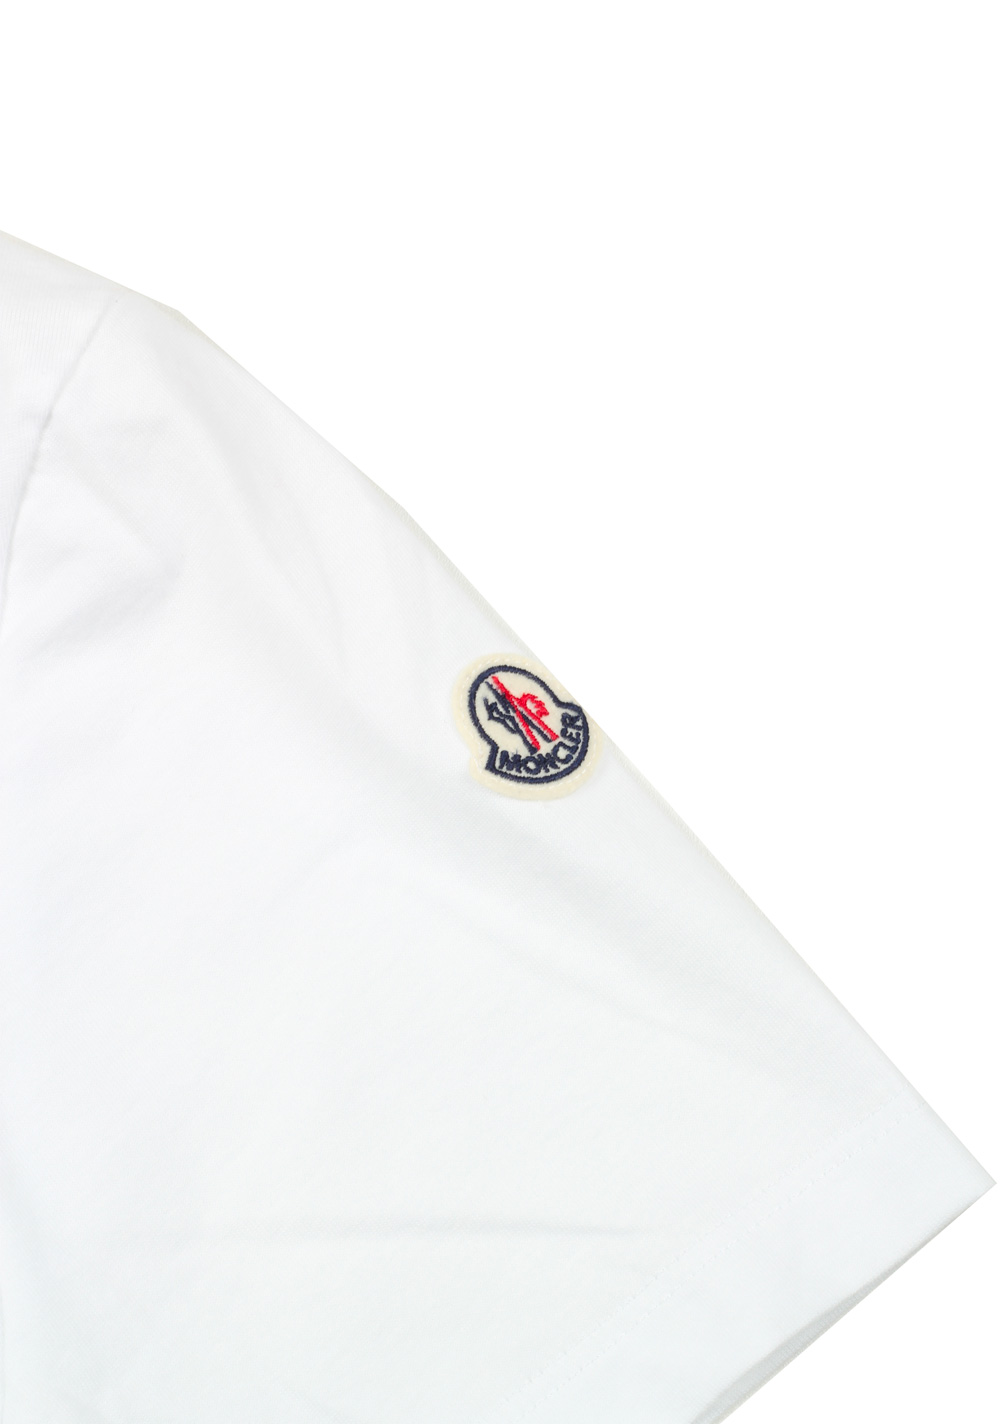 Moncler White Crew Neck Tee Shirt Size S / 36R U.S. | Costume Limité